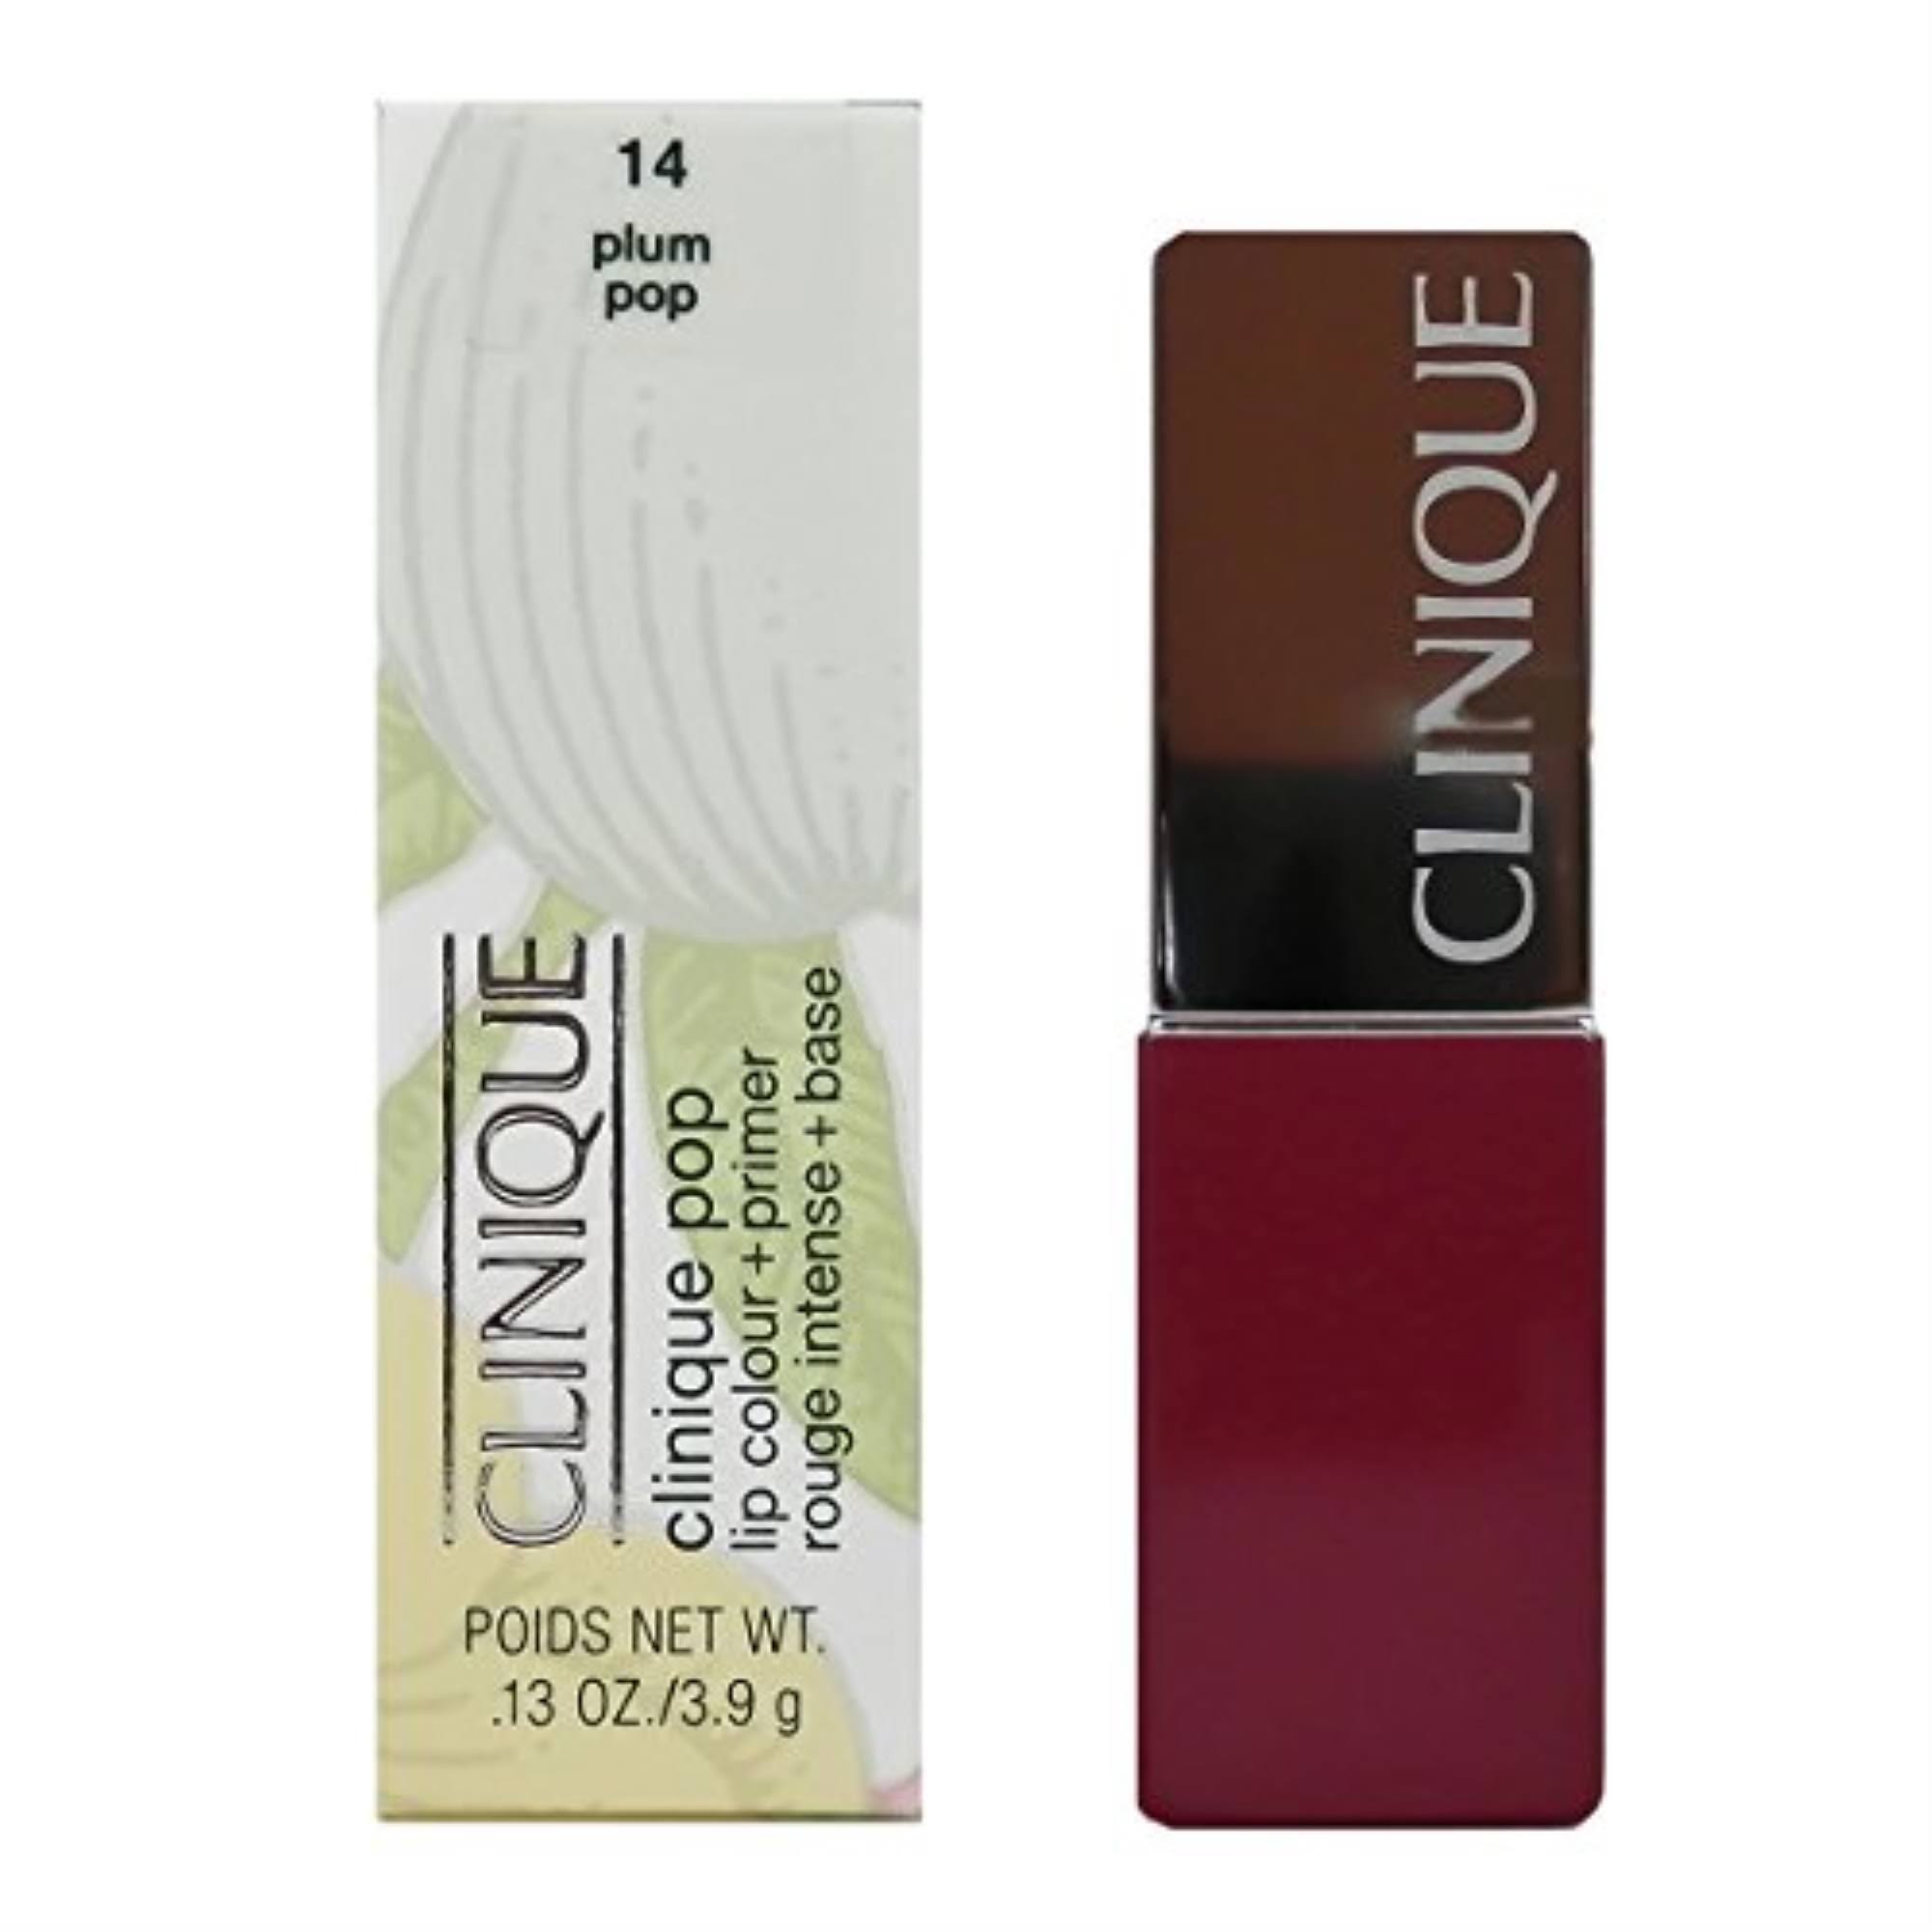 Clinique Pop Lip Colour + Primer - Wow Pop